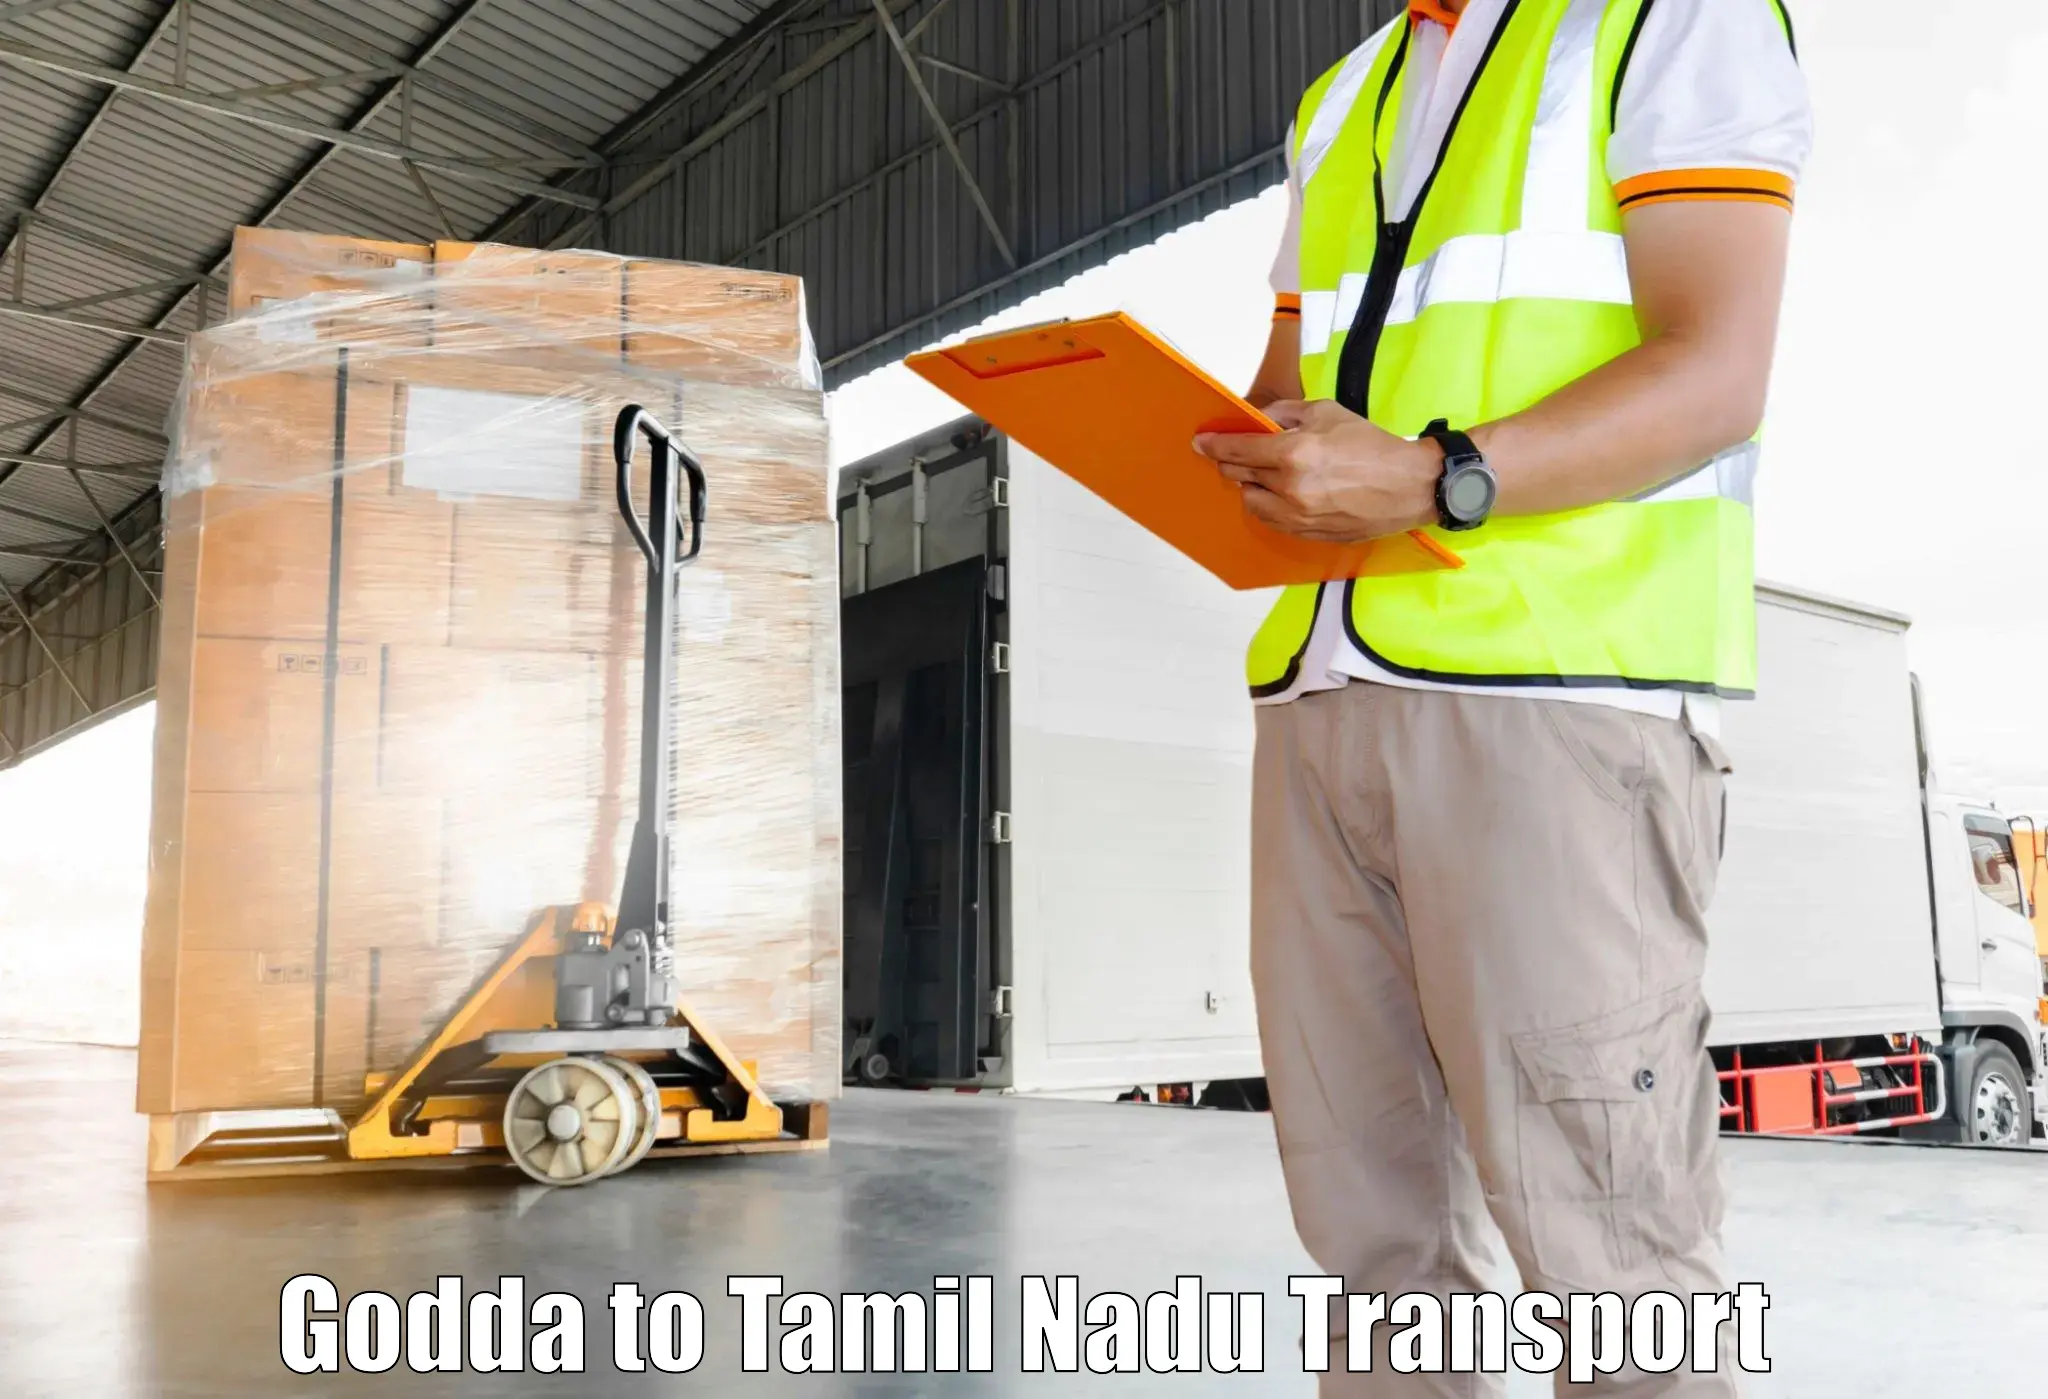 Domestic transport services Godda to Krishnagiri